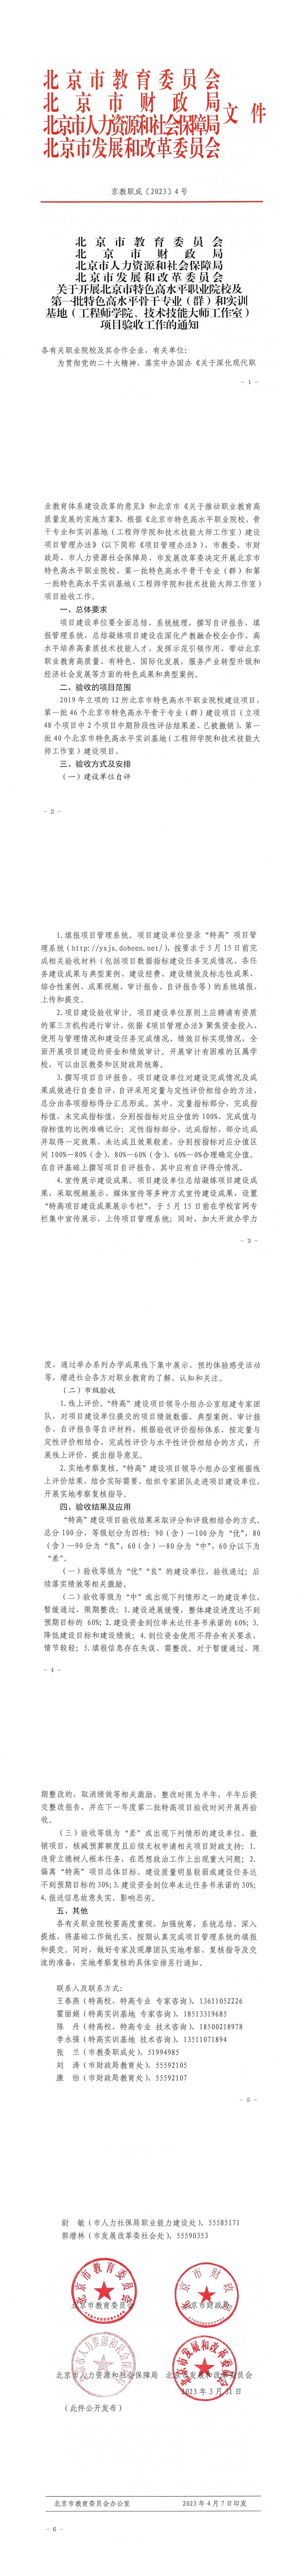 8、北京特高校和一批专业、实训基地验收通知_00.jpg